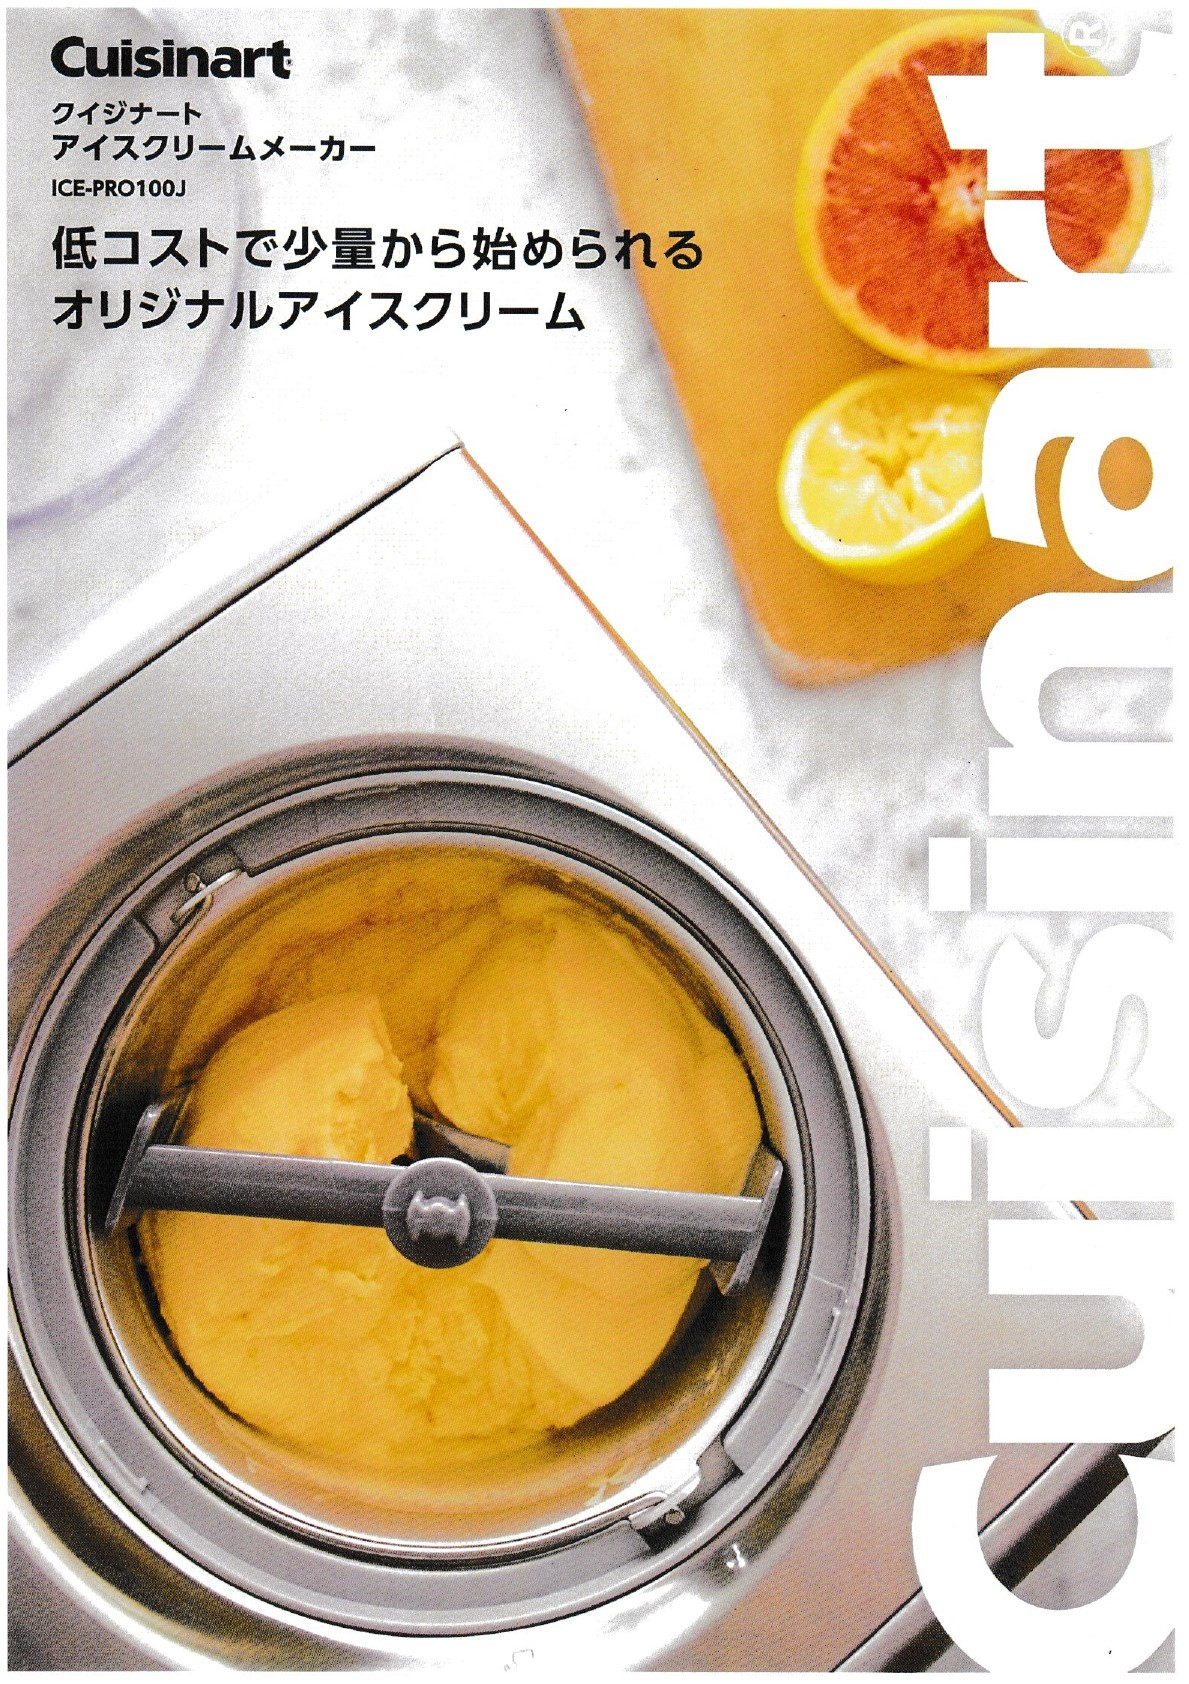 日本国内正規輸入品 クイジナート (Cuisinart) アイスクリームマシン アイスクリームメーカー ICE-PRO100J